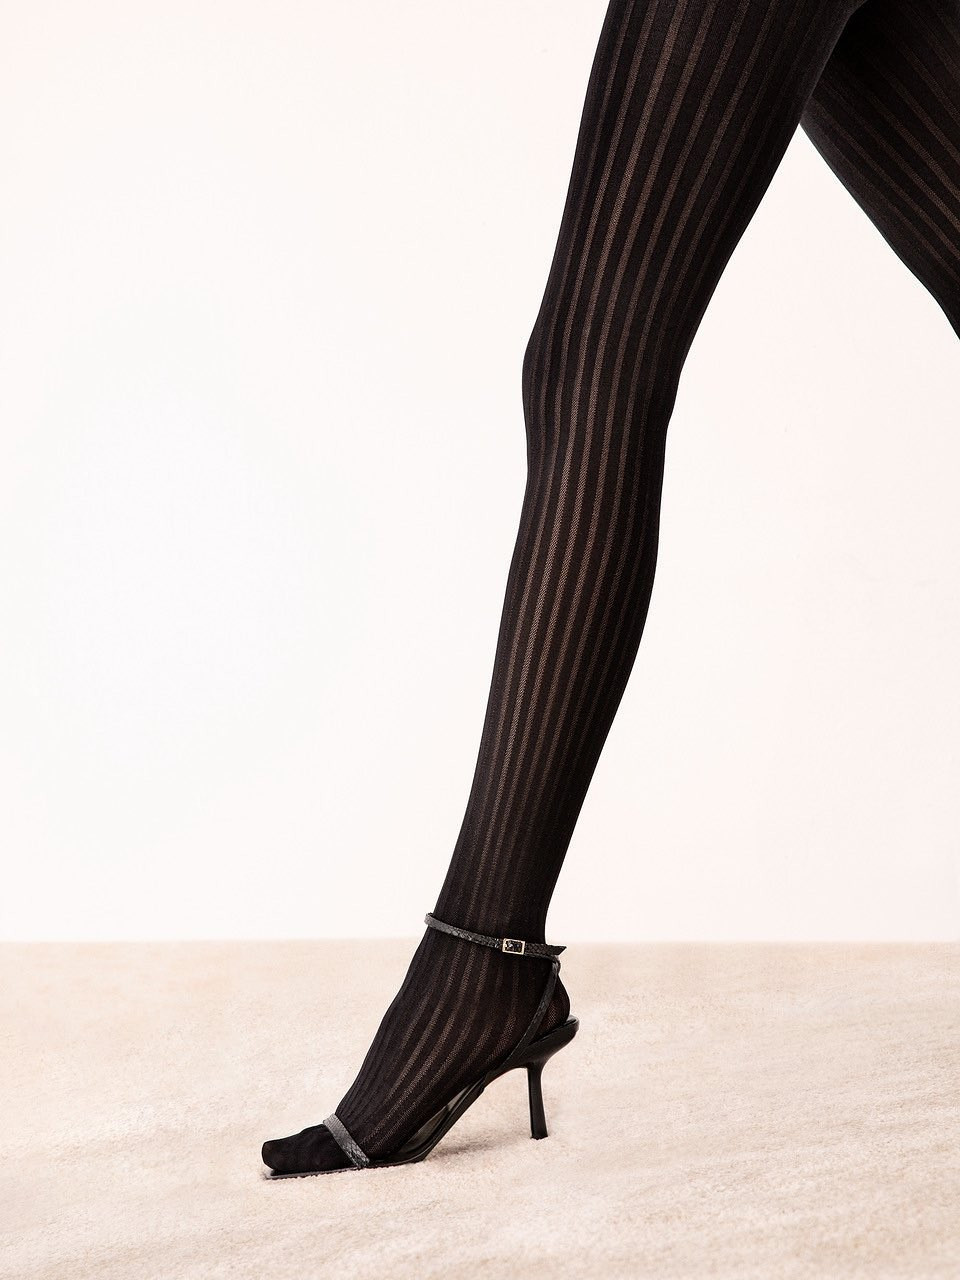 Dámské punčochové kalhoty Fiore Belvedere G 6101 40 den 2-4 černá 2-S